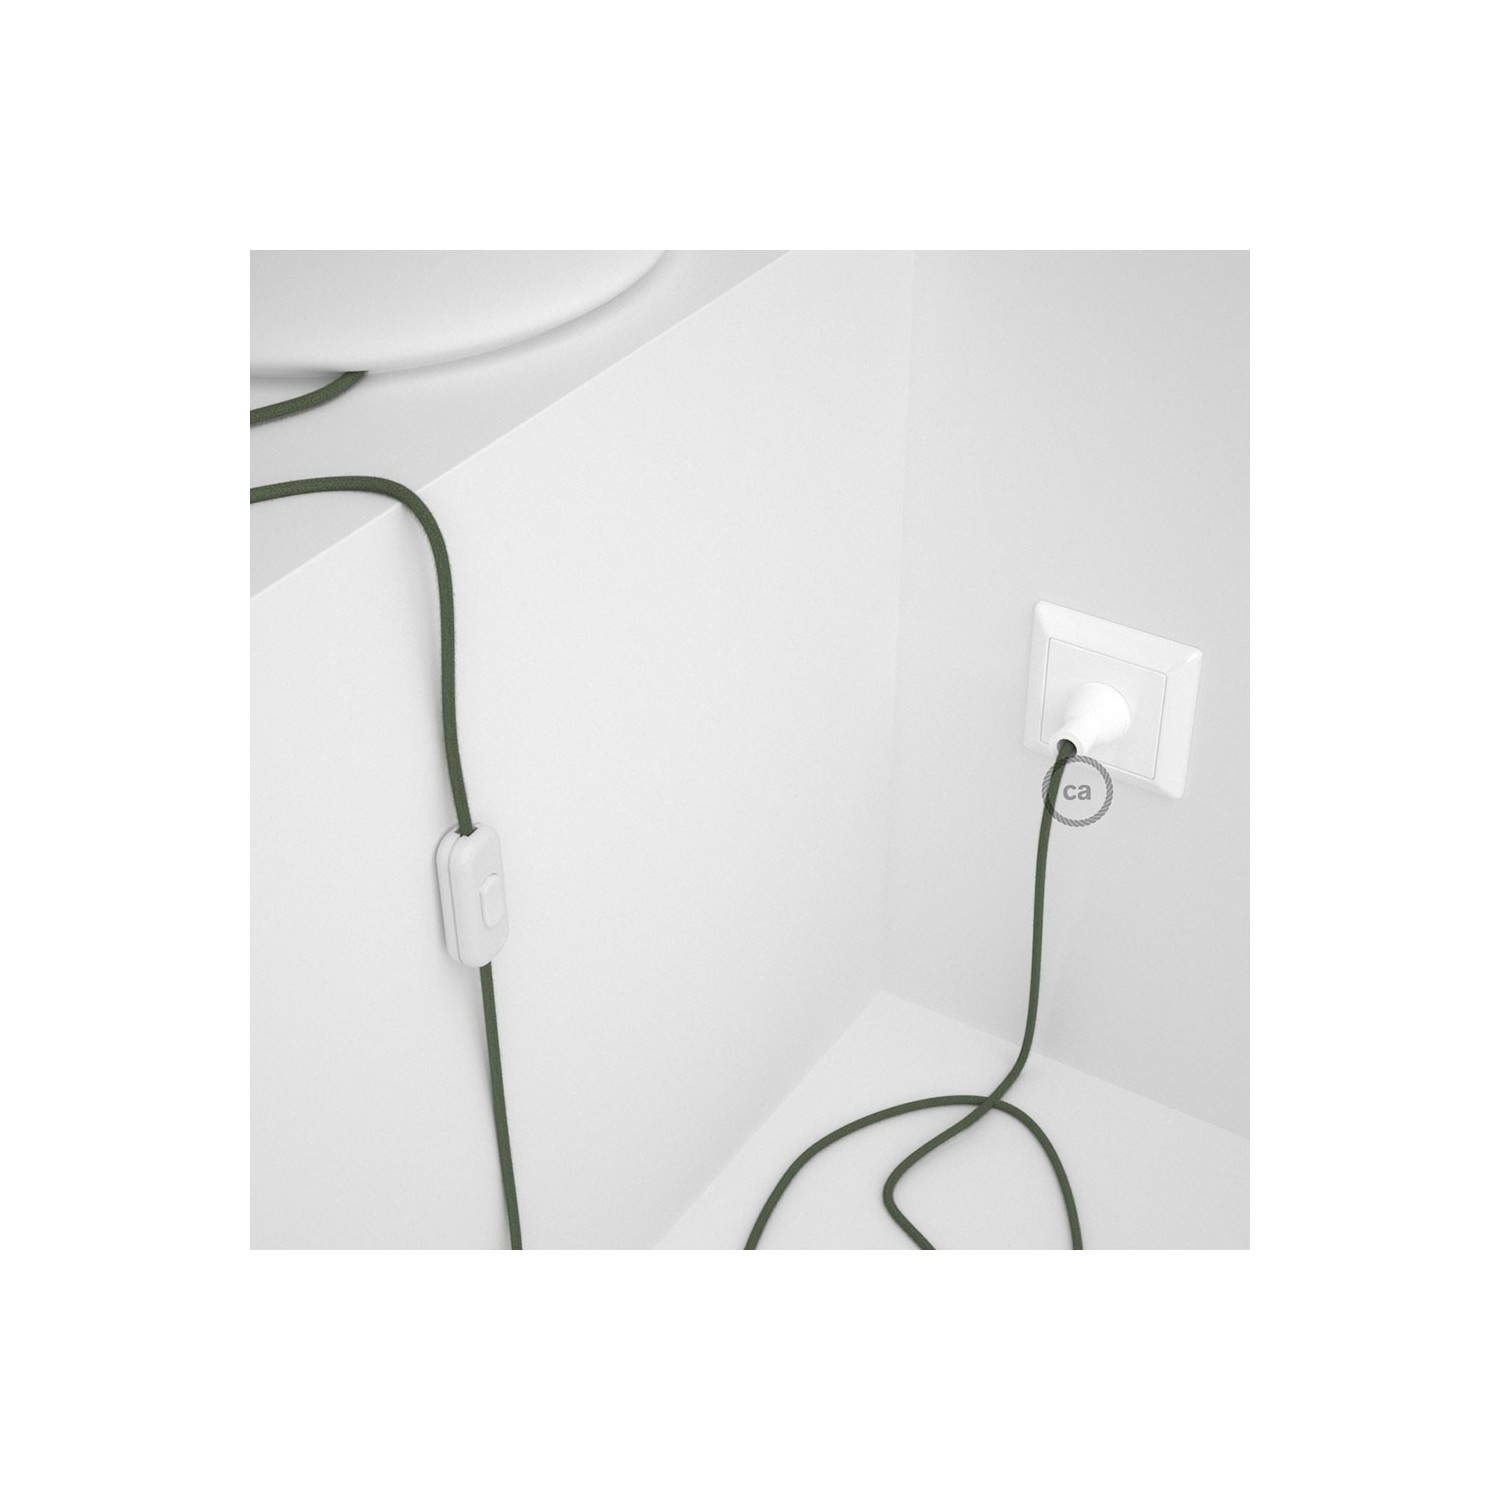 Cableado para lámpara de mesa, cable RC63 Algodón Verde Gris 1,8 m. Elige el color de la clavija y del interruptor!